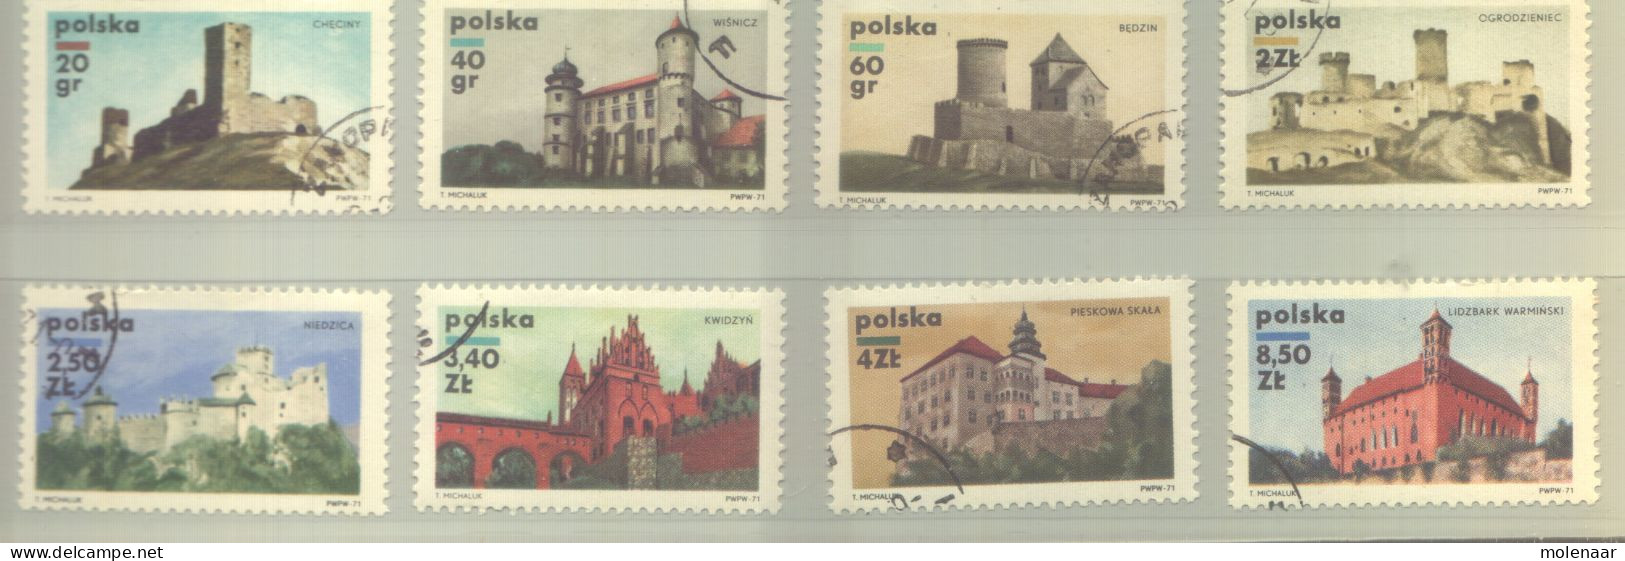 Postzegels > Europa > Polen > 1944-.... Republiek > 1981-90 > Gebruikt 2054-2061 (12190) - Used Stamps